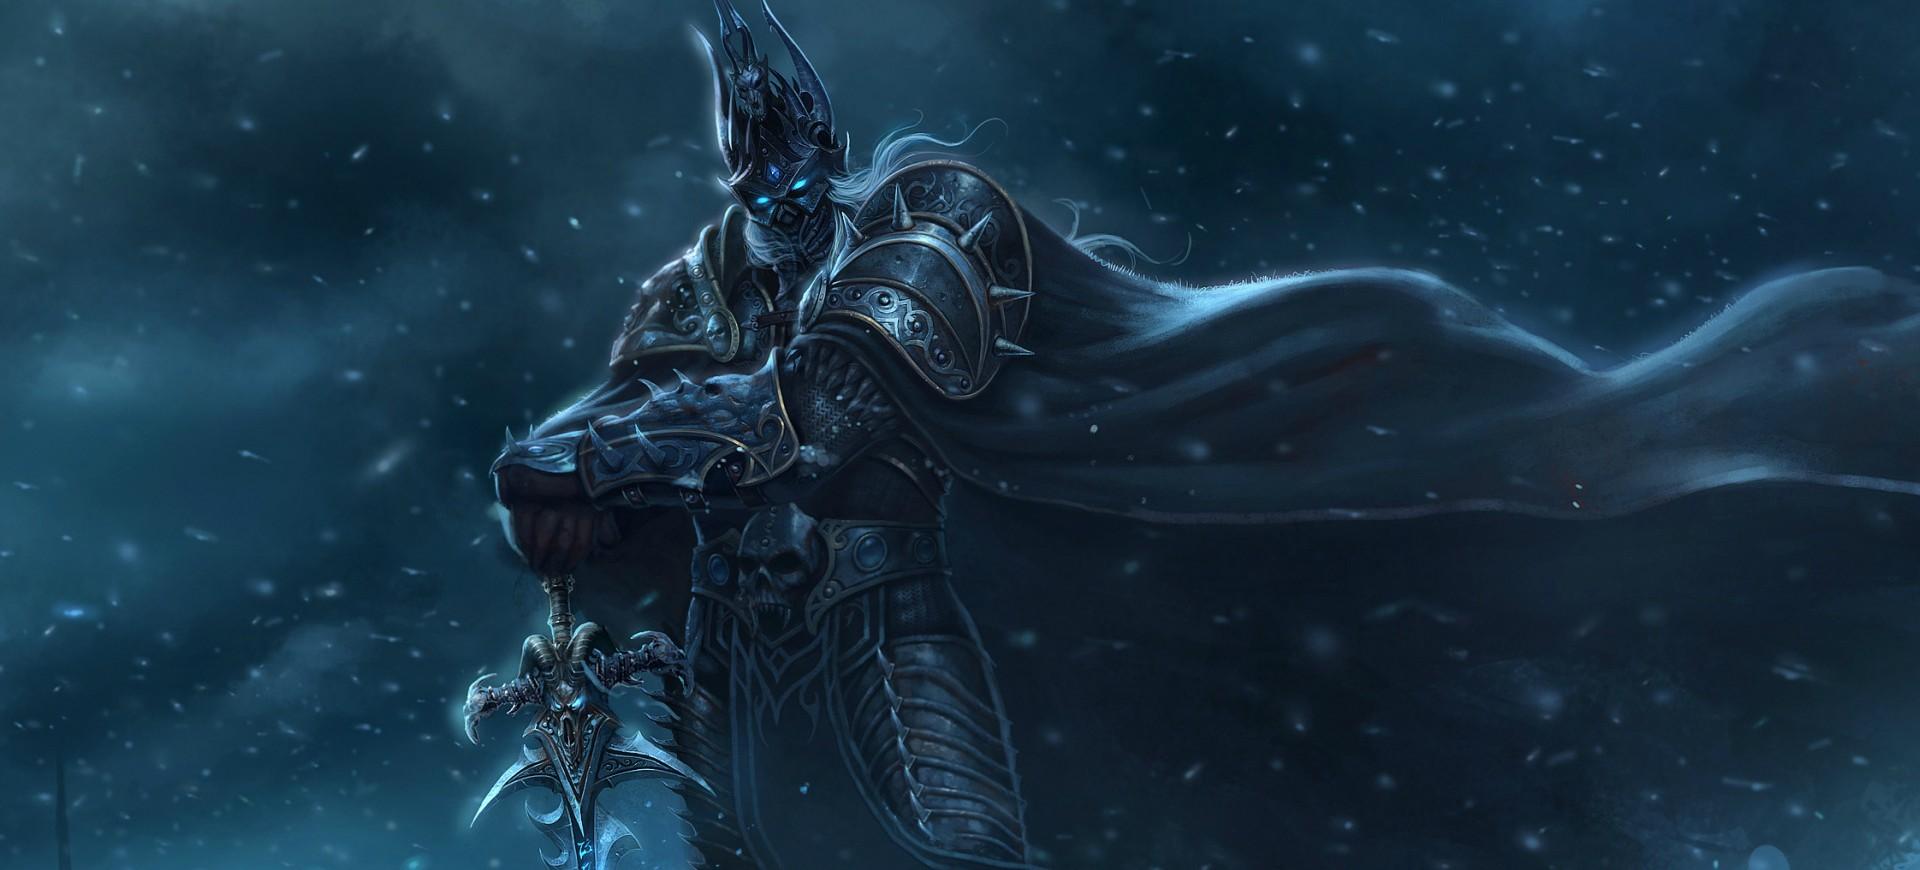 Warcraft 3 đã trở lại với một bản cập nhật mới